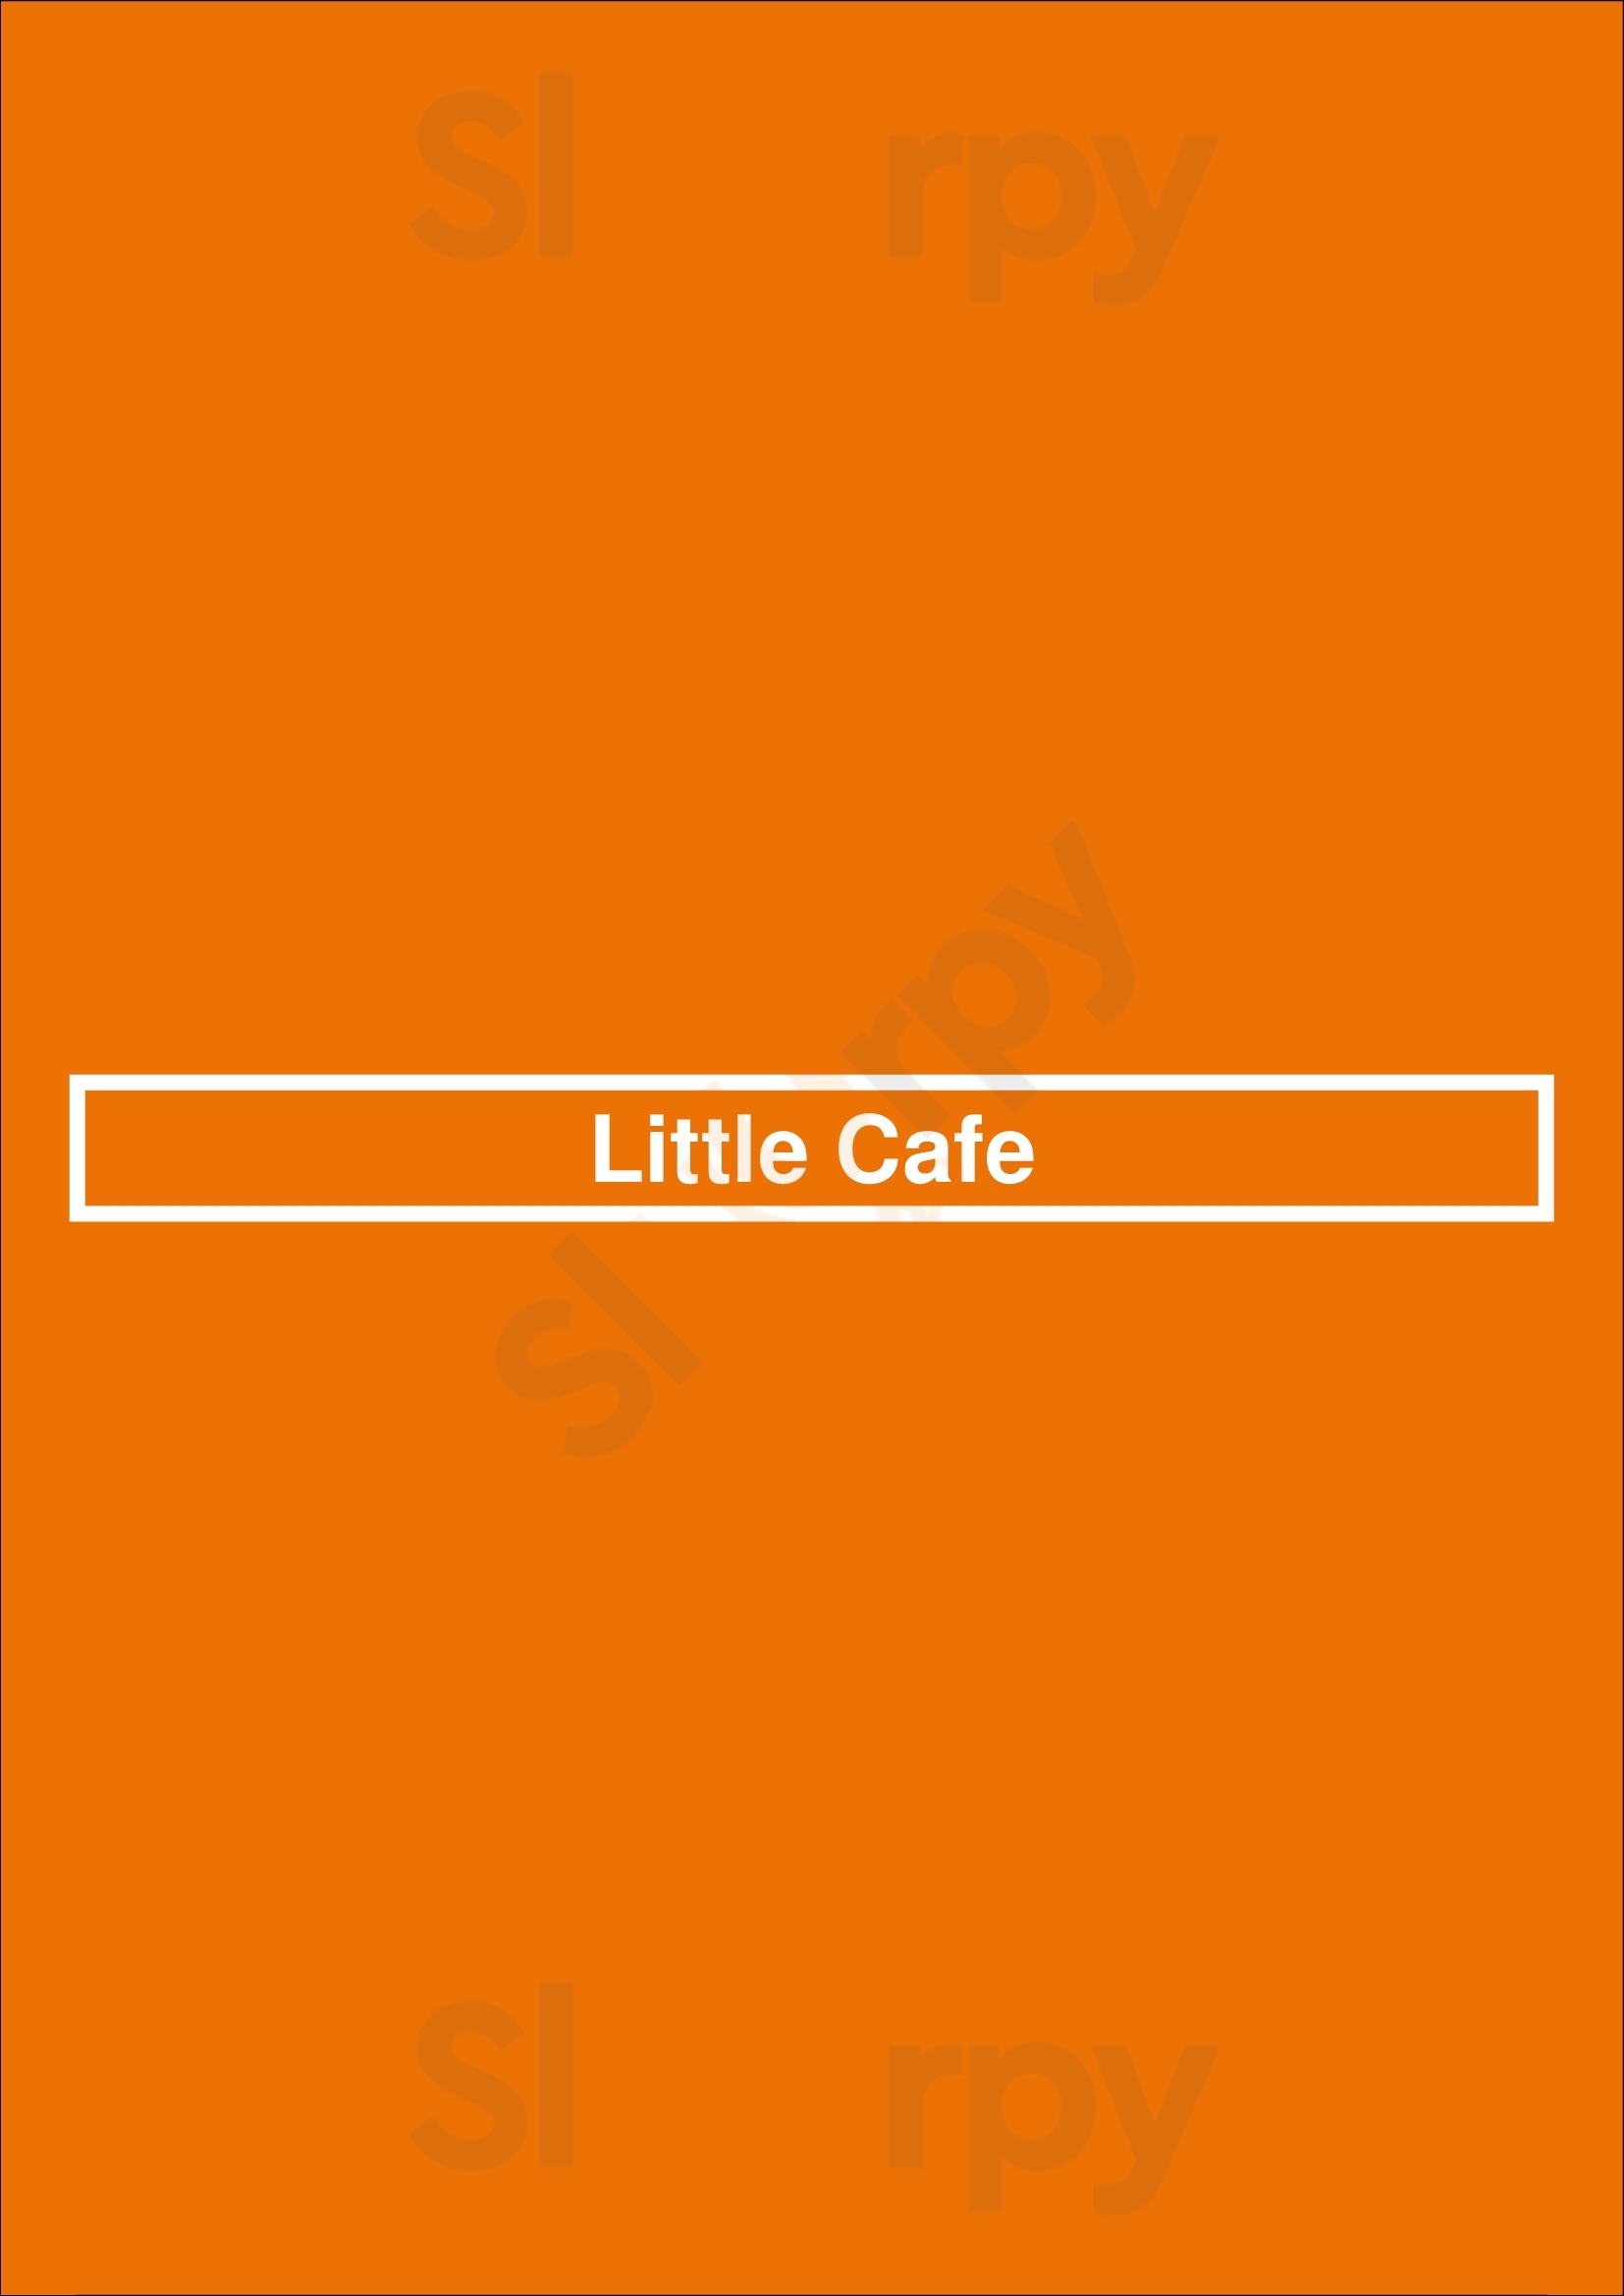 Little Cafe Paris Menu - 1